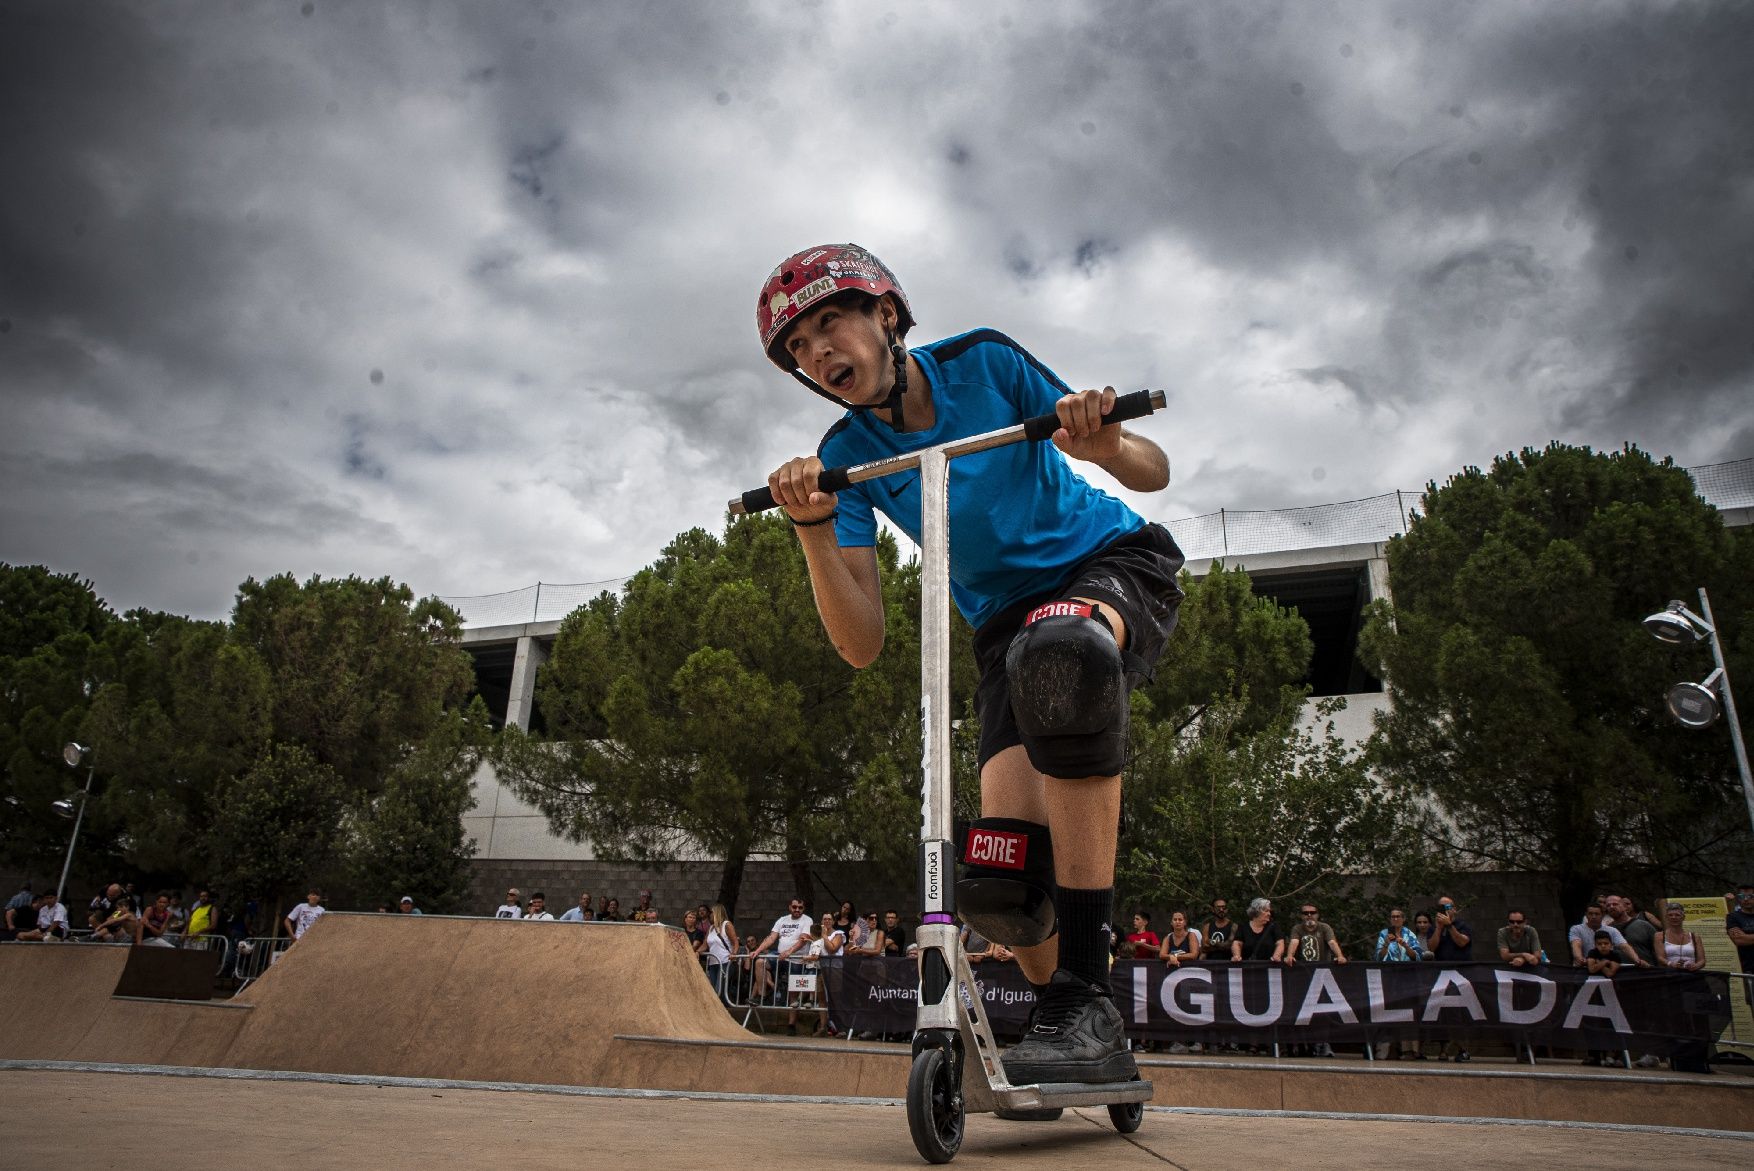 Totes les imatges del campionat de Catalunya de Skate a Igualada